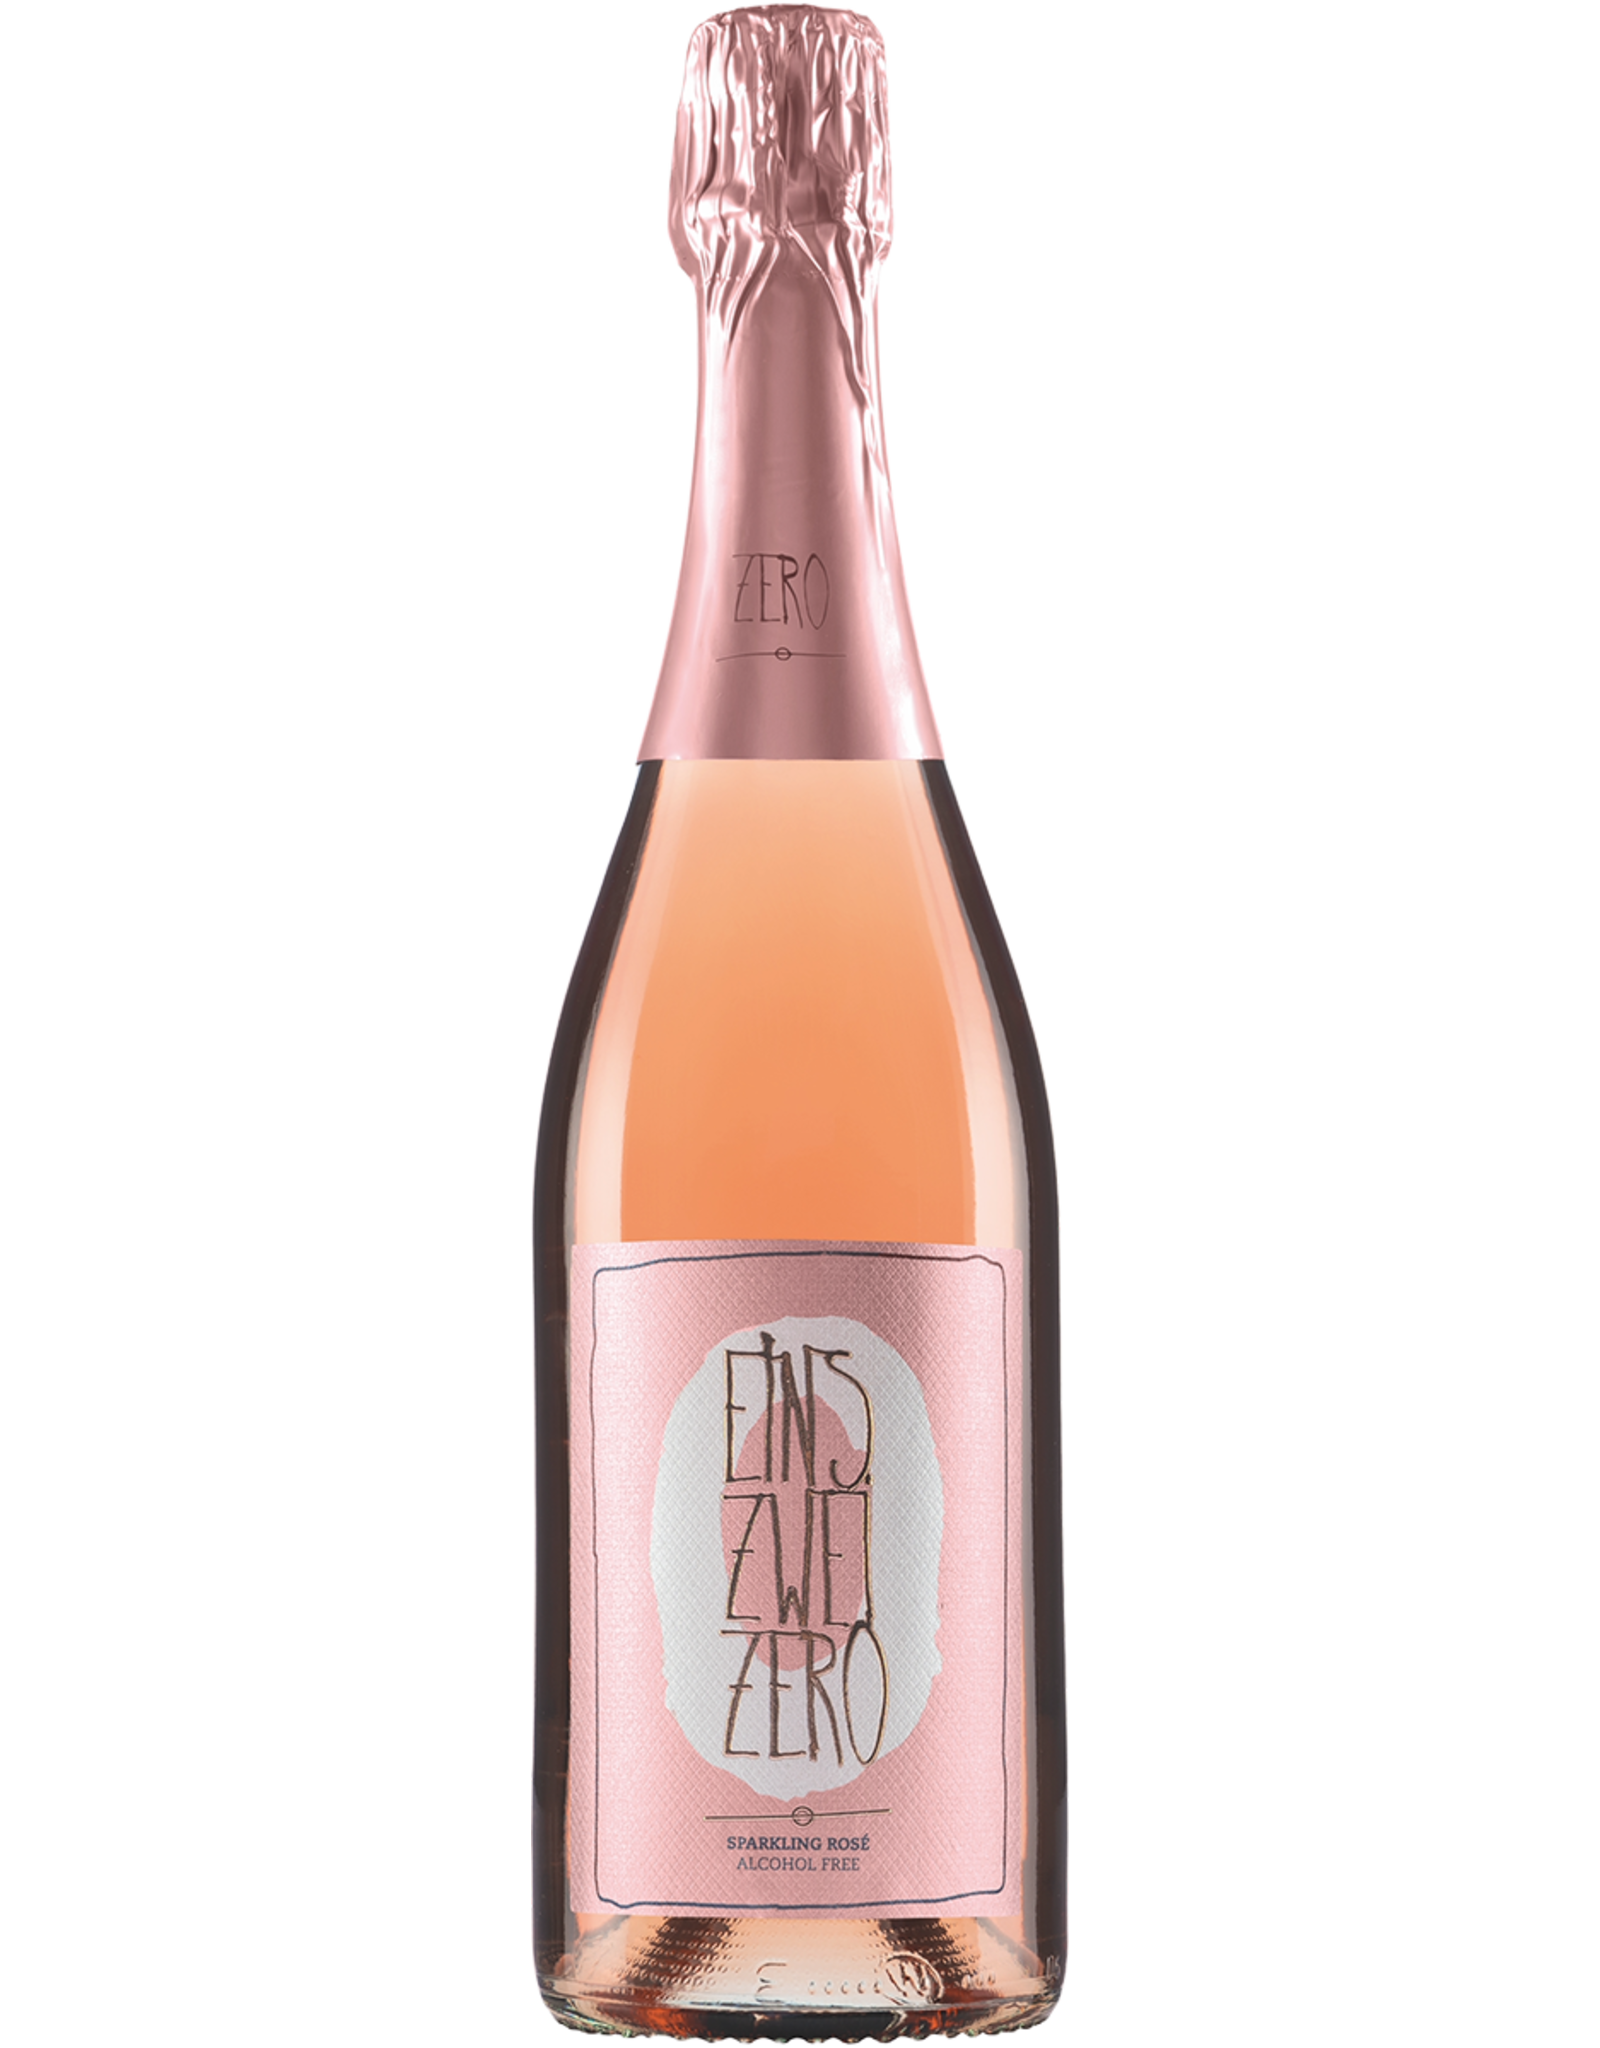 Weingut Leitz Eins-Zwei-Zero Sparkling Rosé